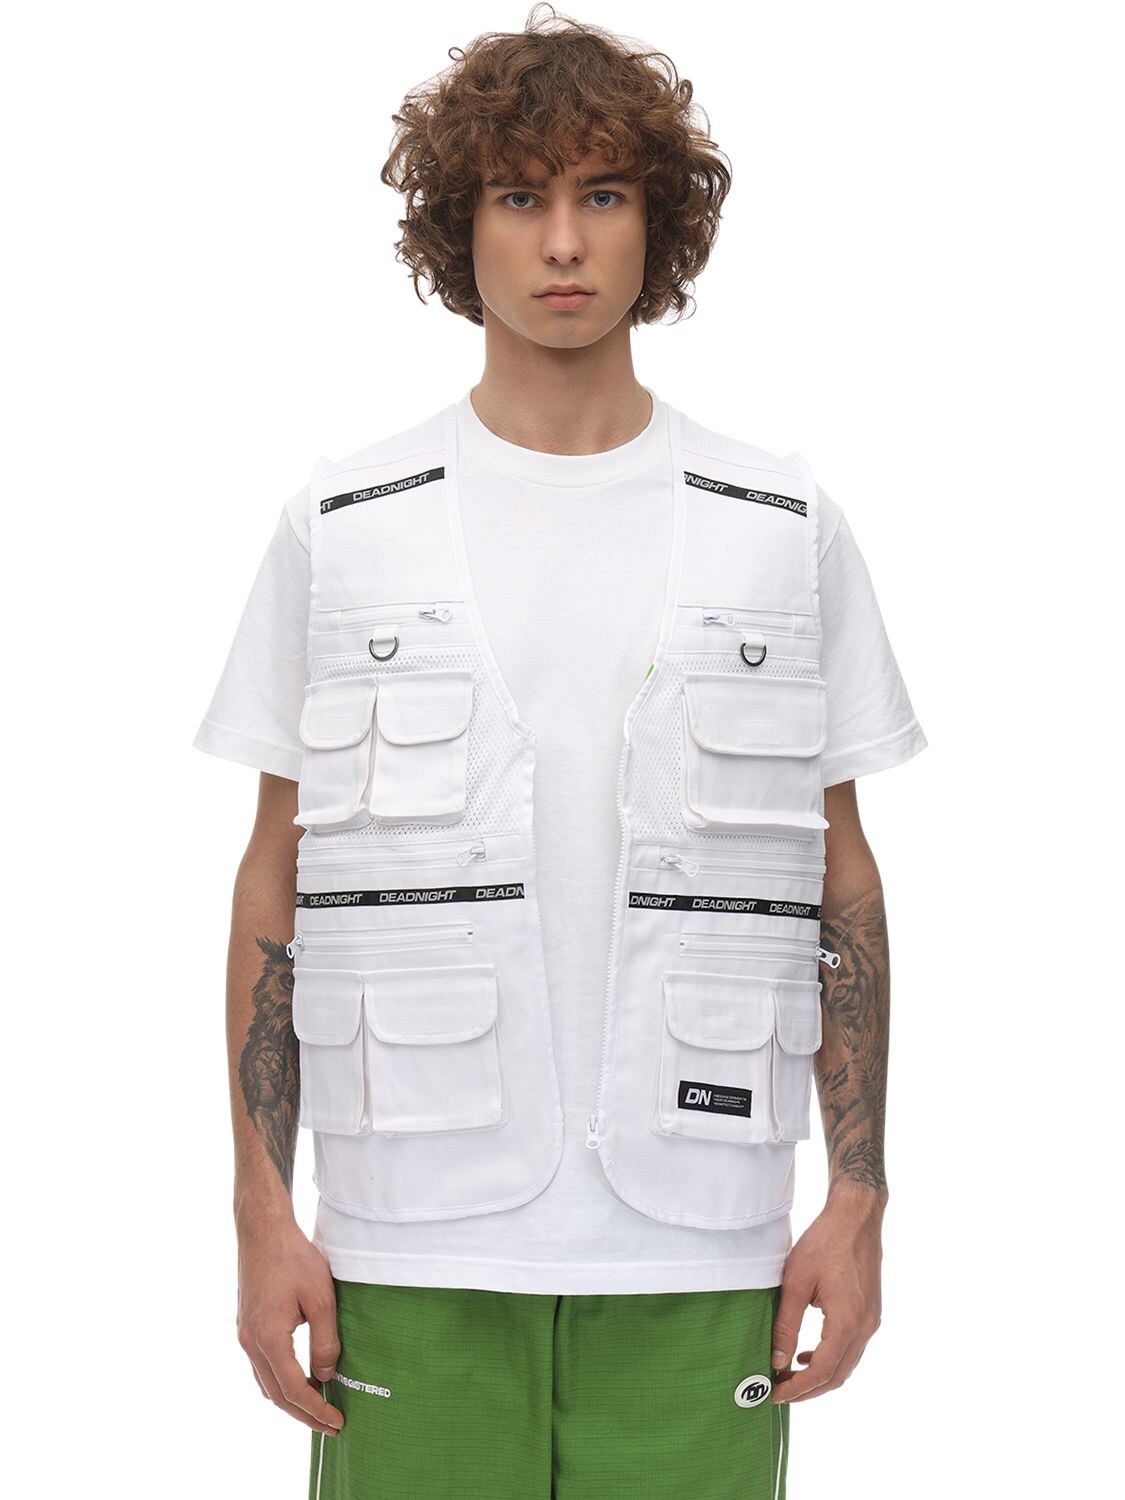 Deadnight Medical Vest In White